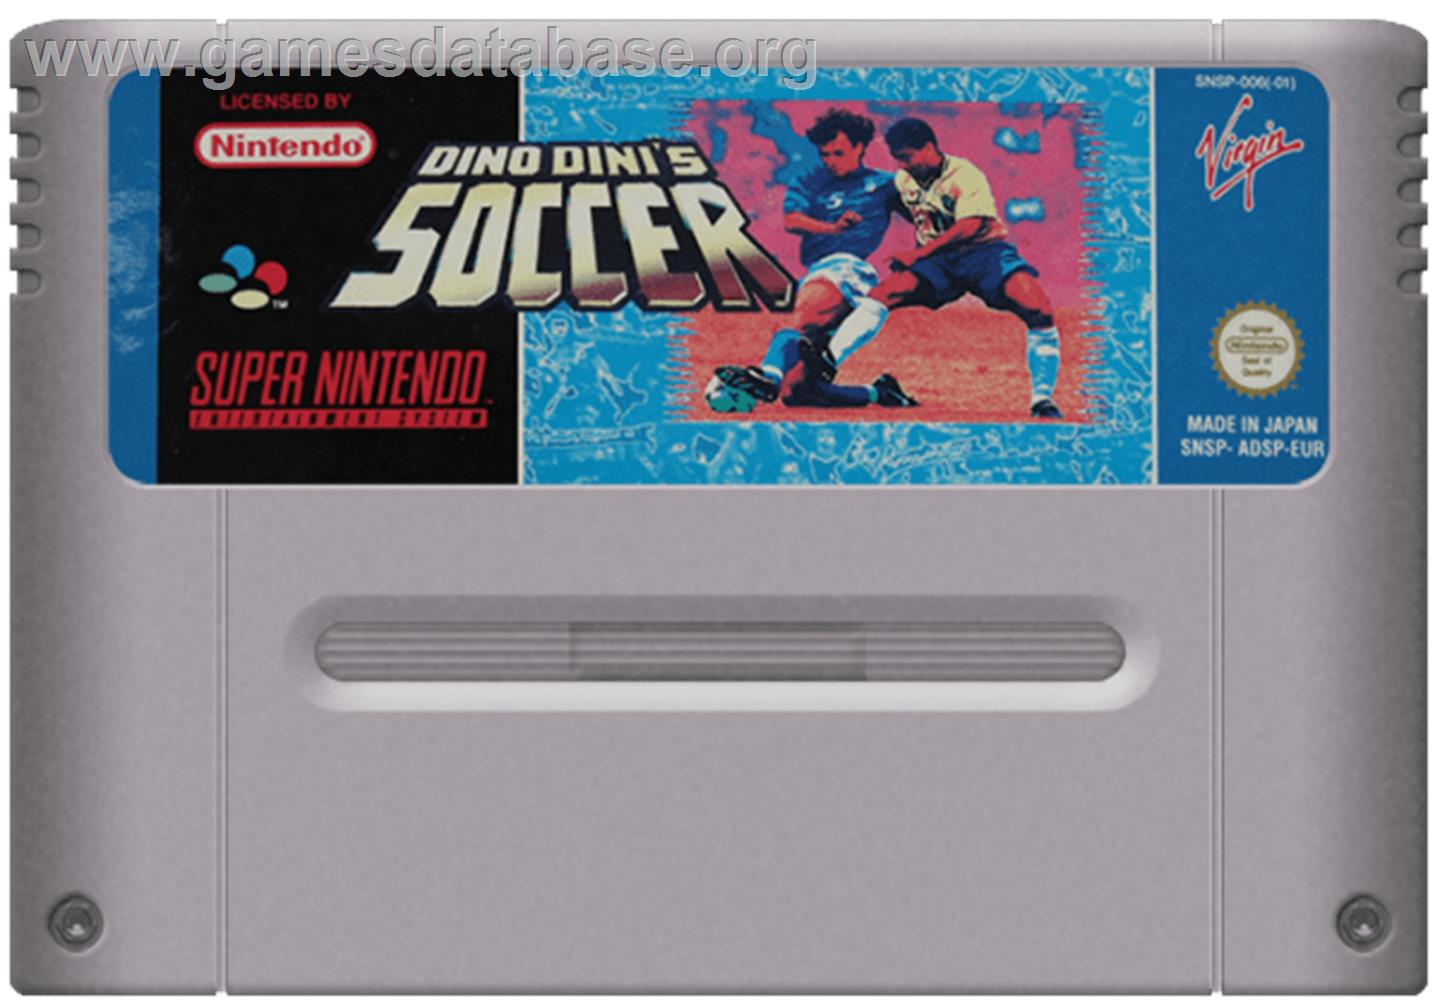 Dino Dini's Soccer - Nintendo SNES - Artwork - Cartridge